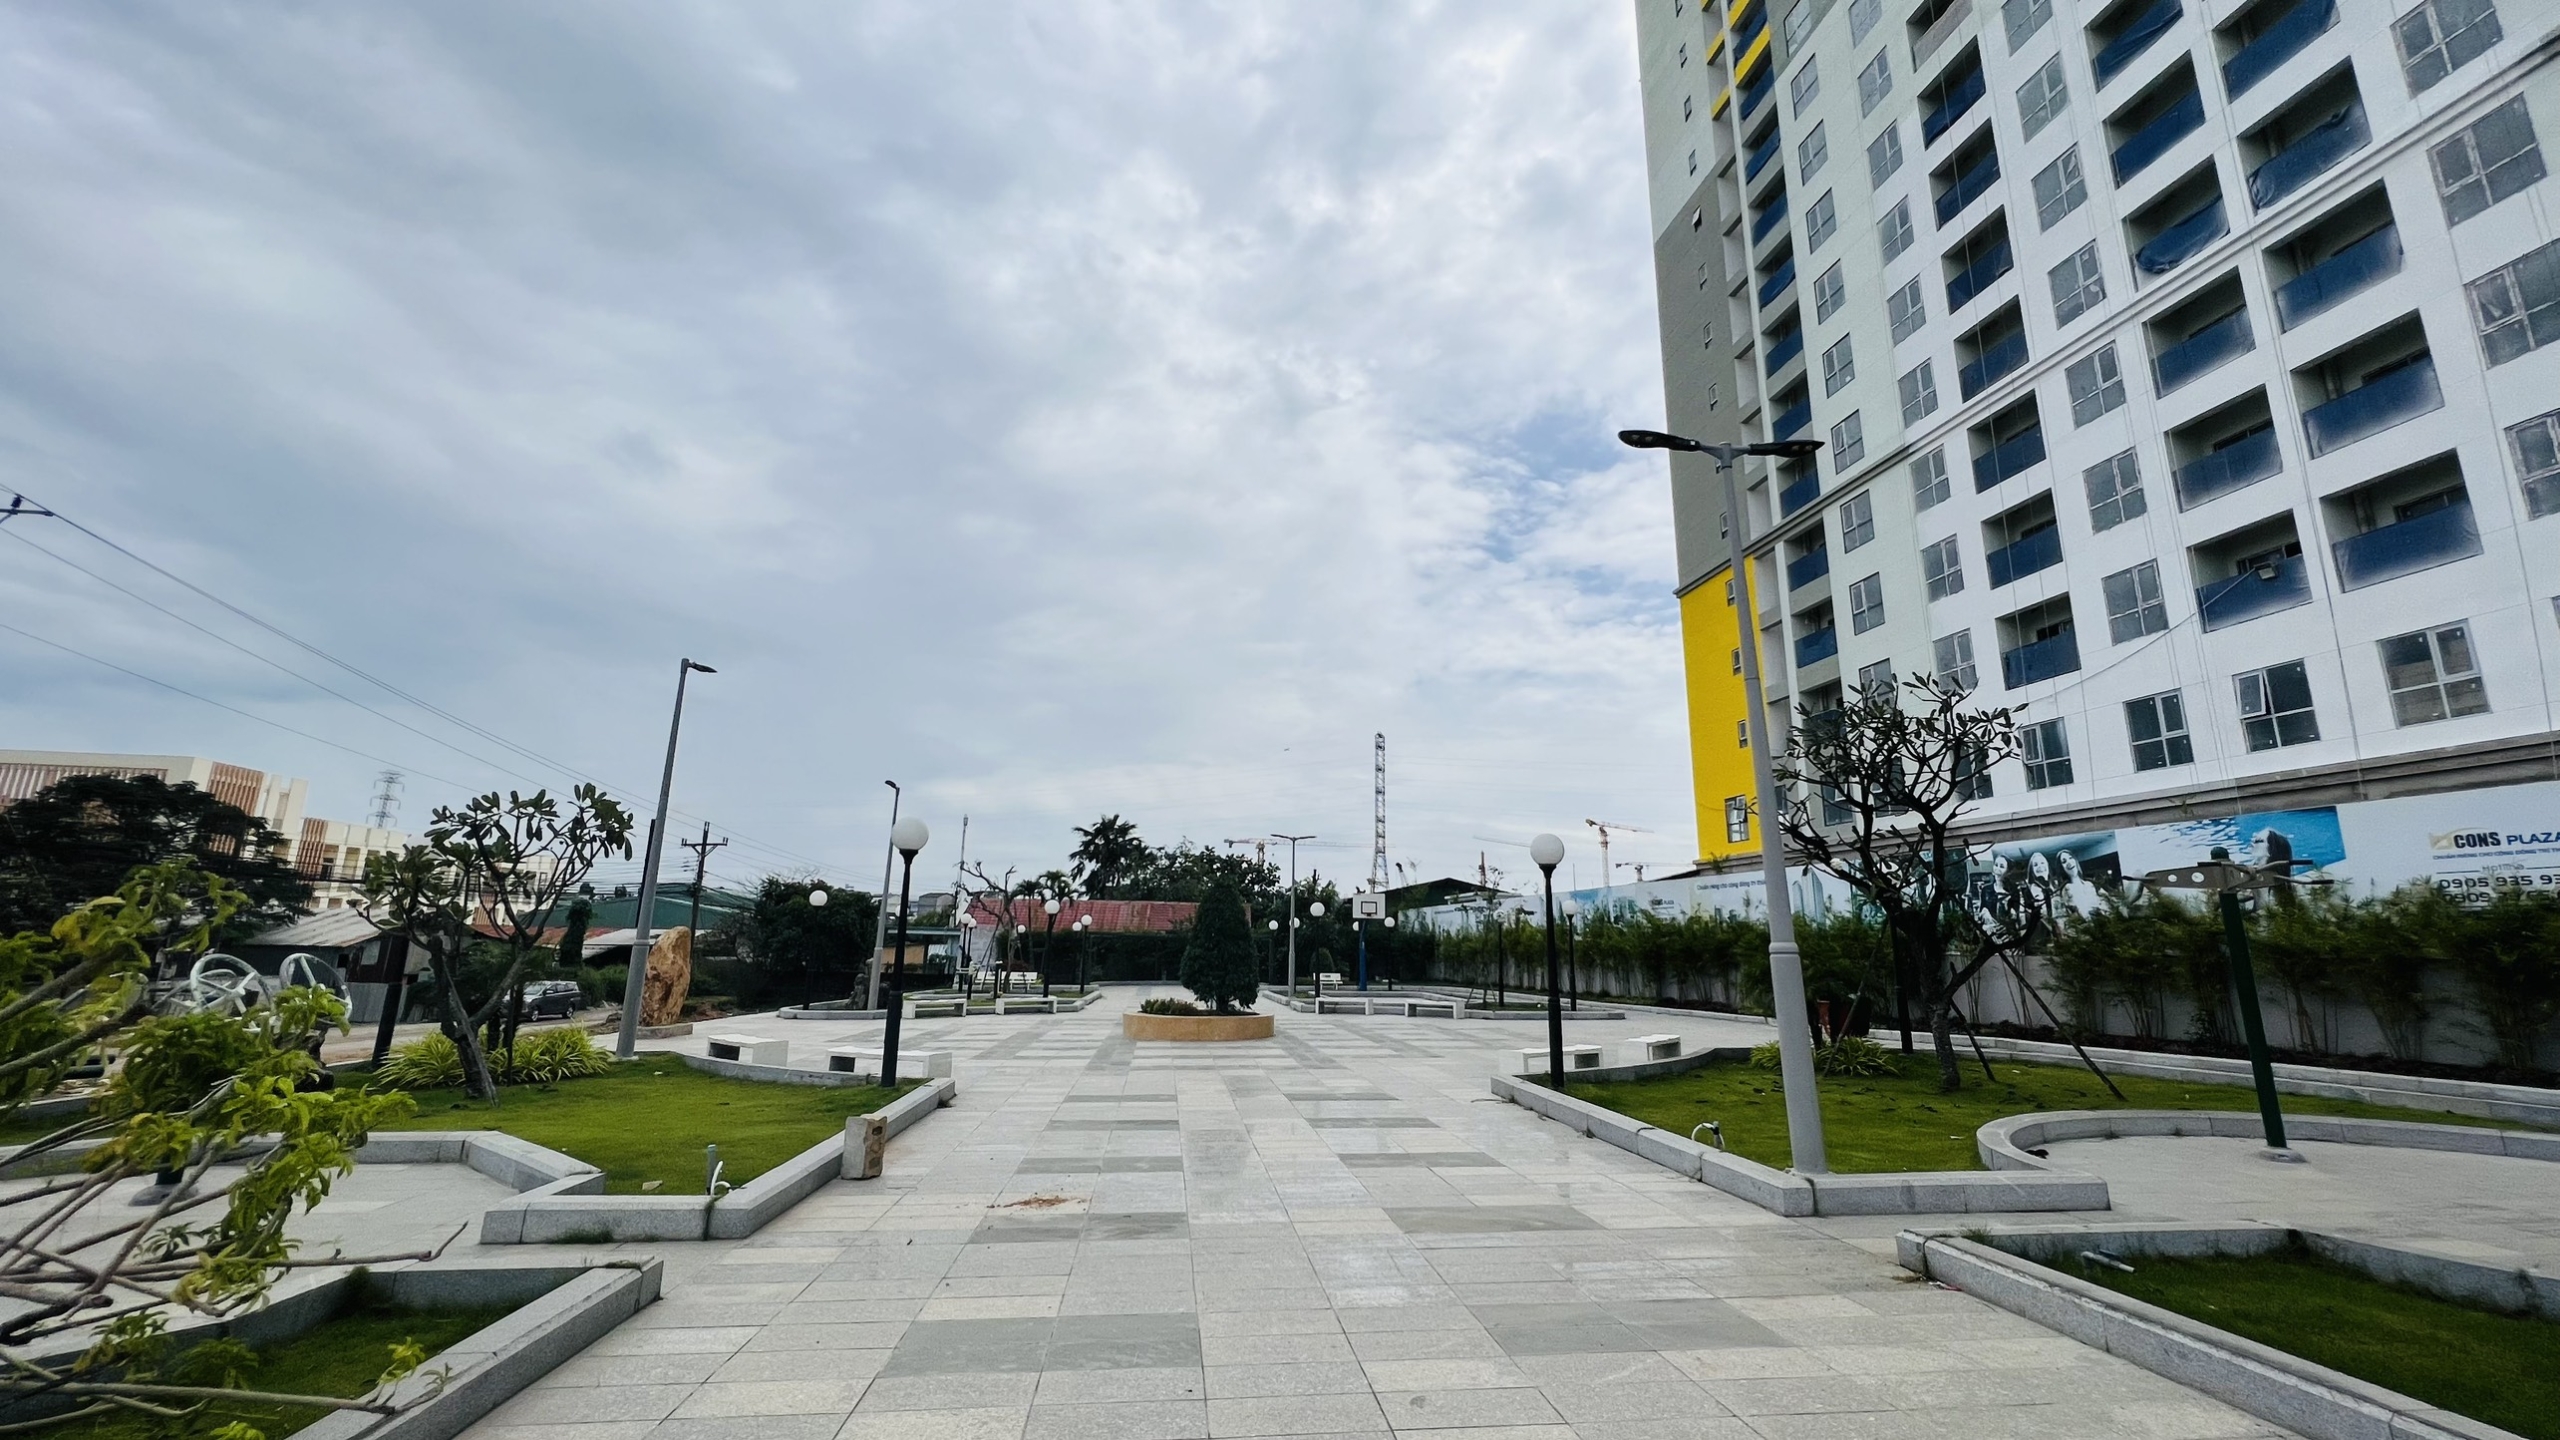 Tiến Độ Xây Dựng Dự Án Bcons Plaza 31 Tháng 10 Năm 2022